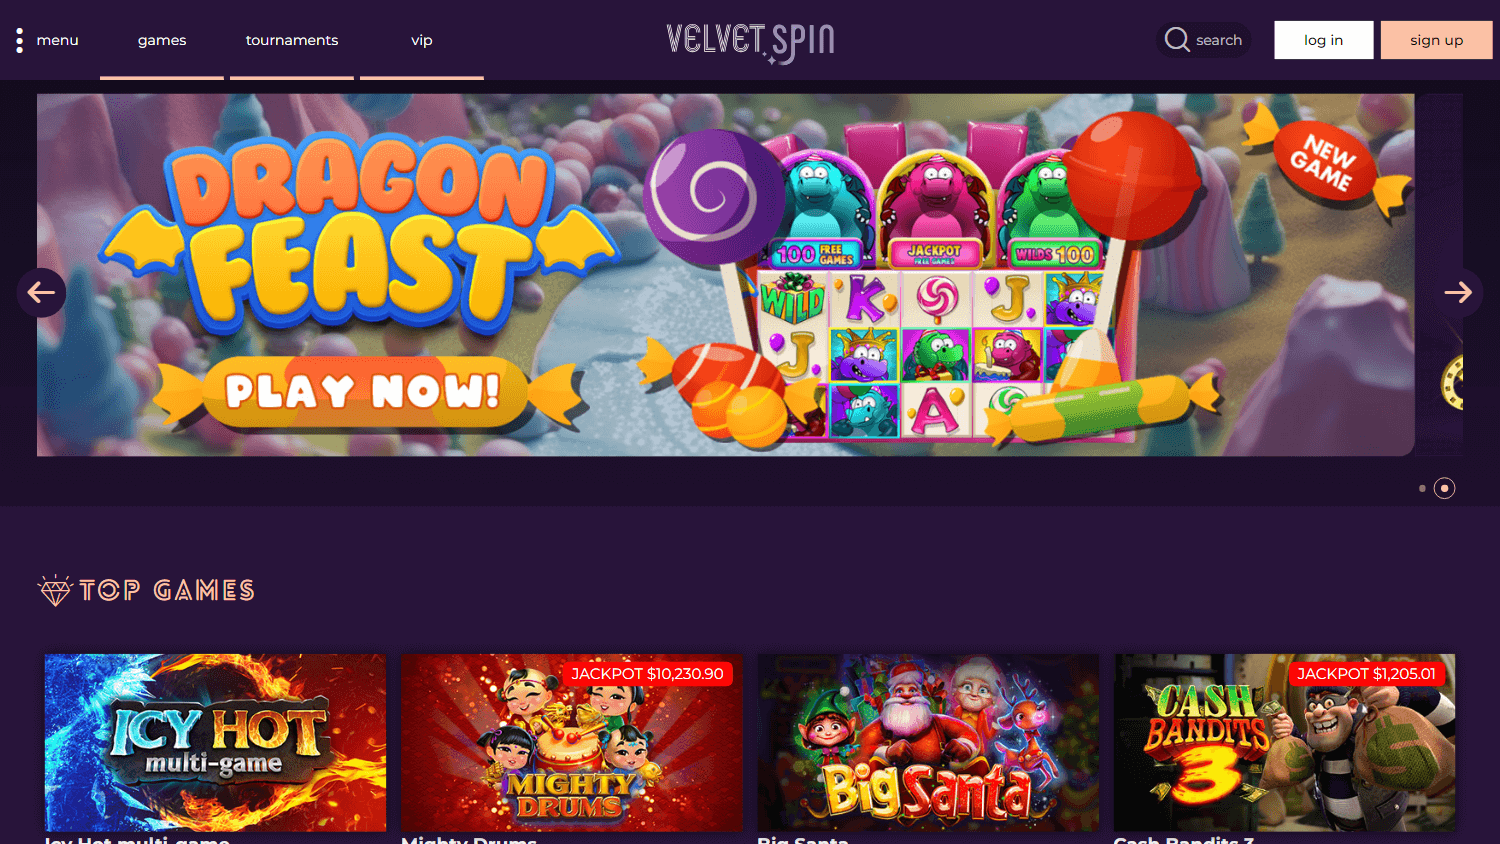 velvet_spin_casino_homepage_desktop